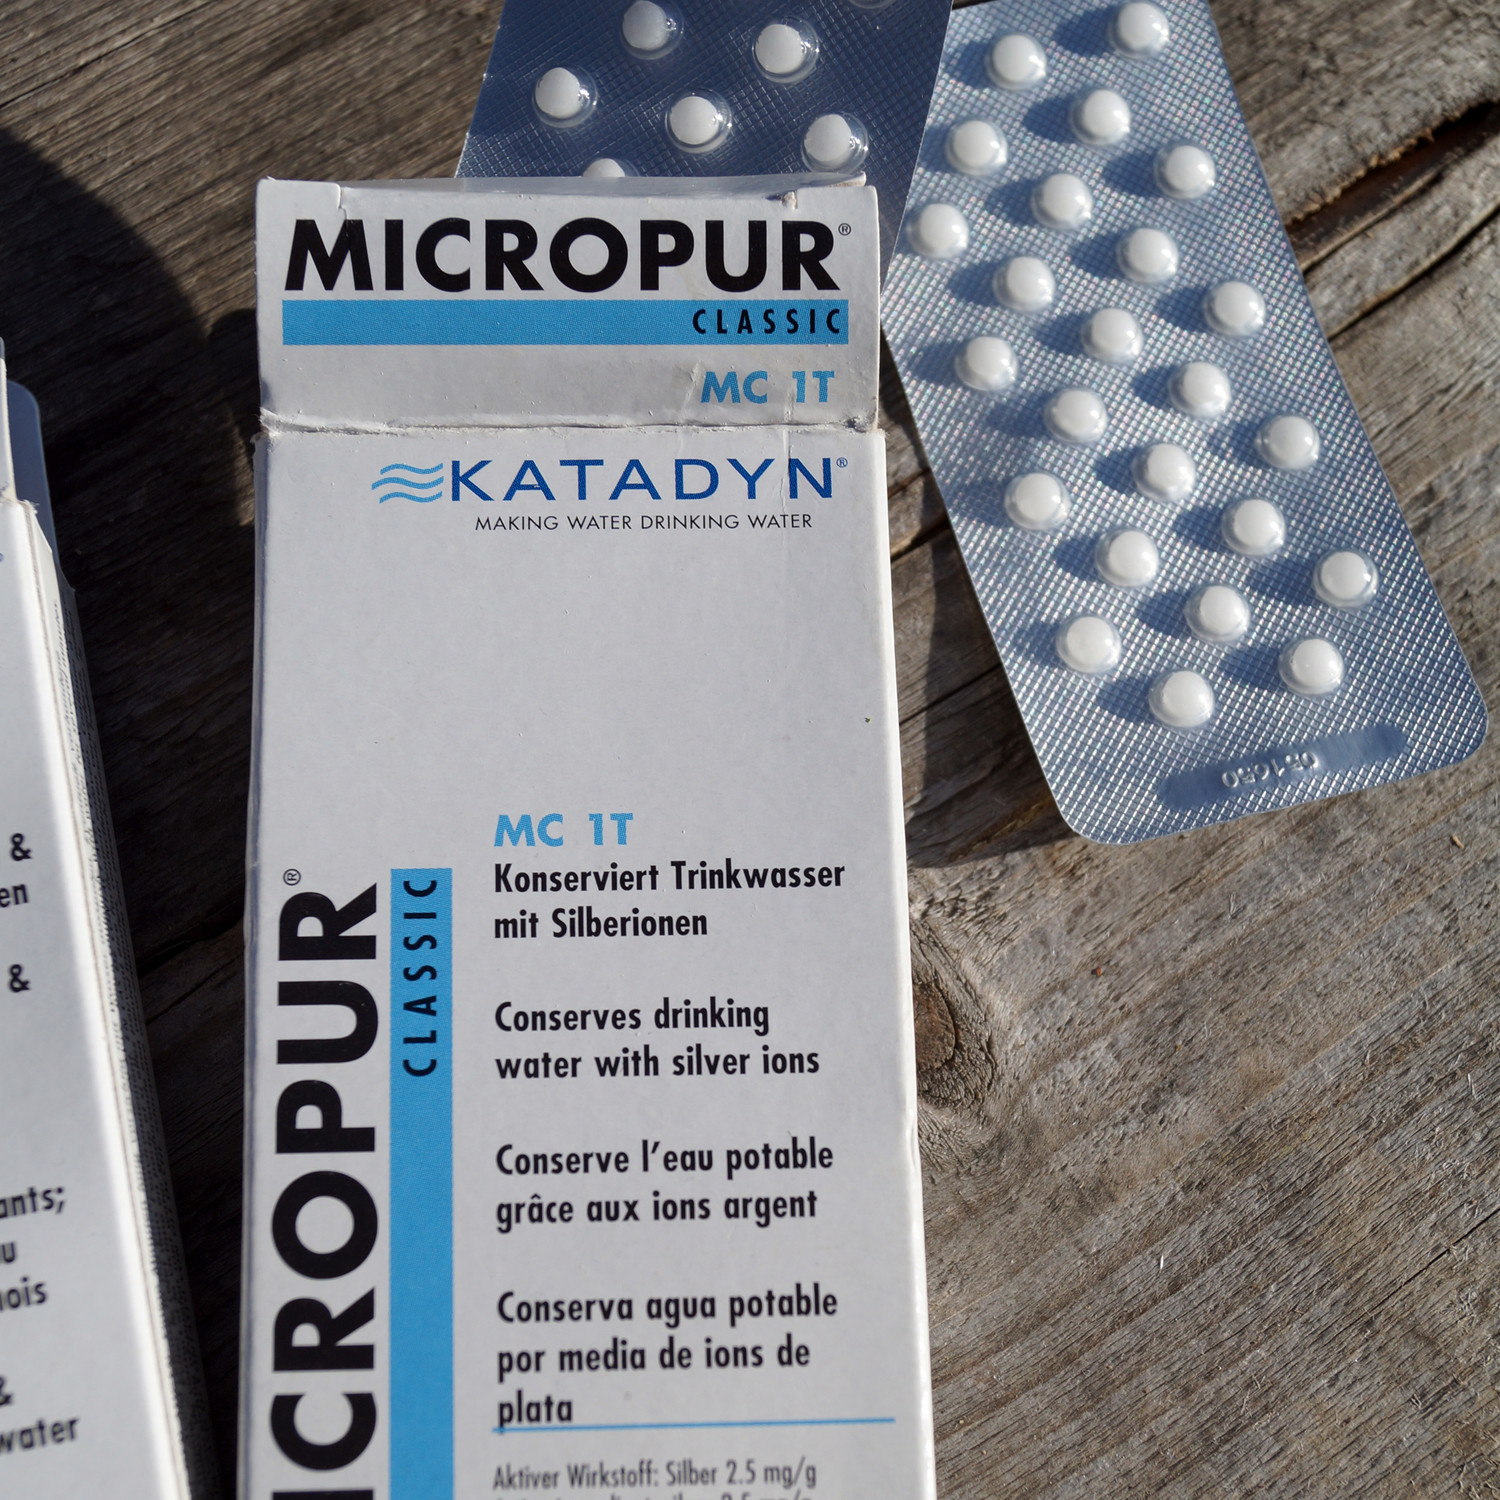 Katadyn Micropur Classic Trinkwasserkonservierung als Tabletten, Pulver und  Flüssigkeit - Simigu Outdoor Equipment